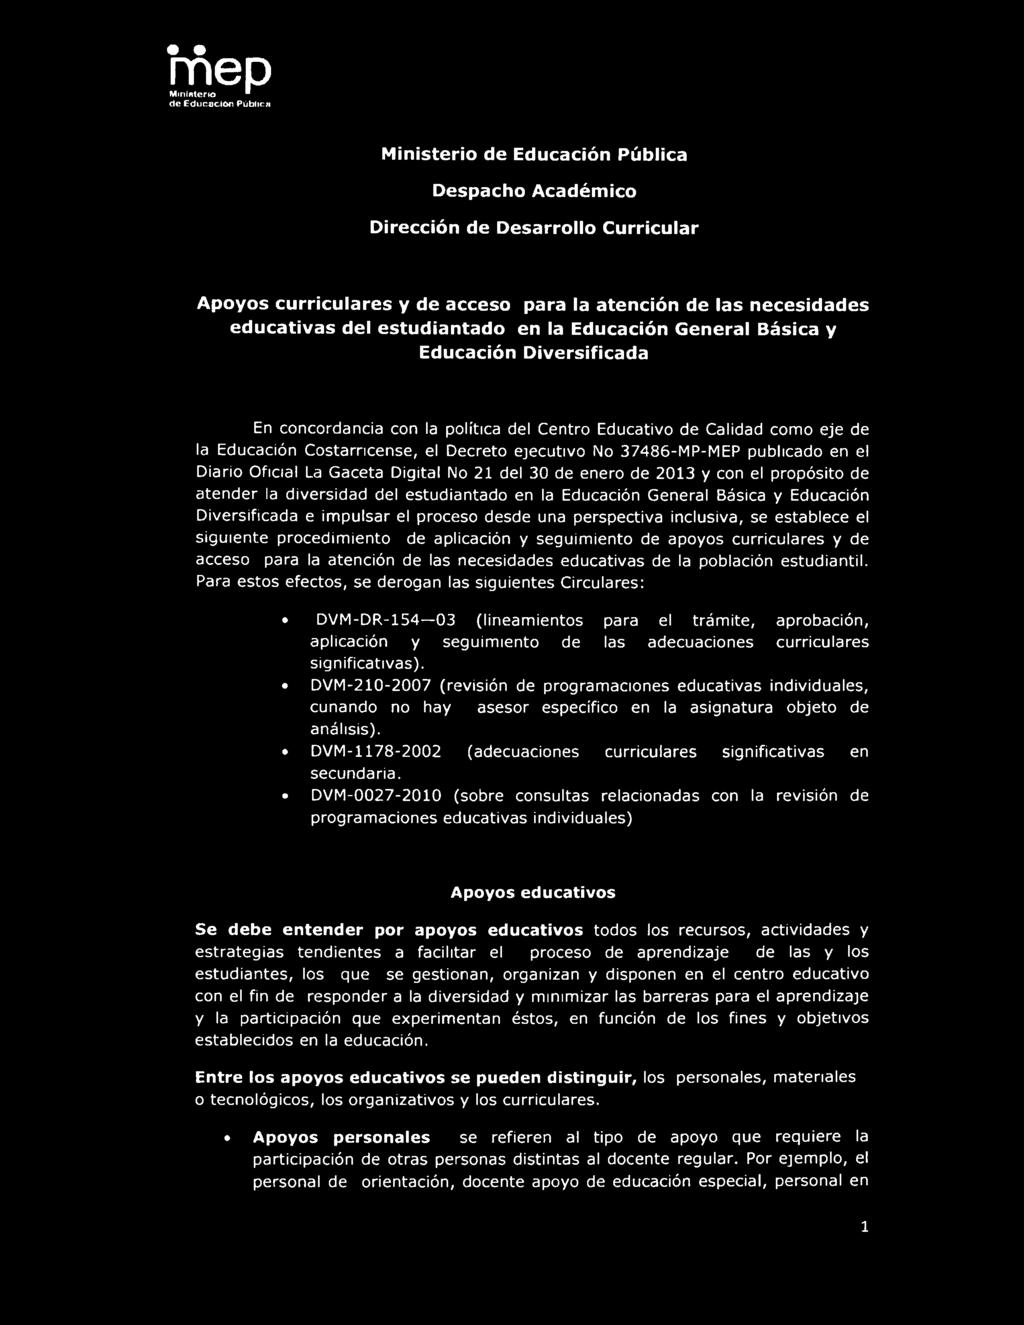 ejecutivo No 37486-MP-MEP publicado en el Diario Oficial La Gaceta Digital No 21 del 30 de enero de 2013 y con el propósito de atender la diversidad del estudiantado en la Educación General Básica y